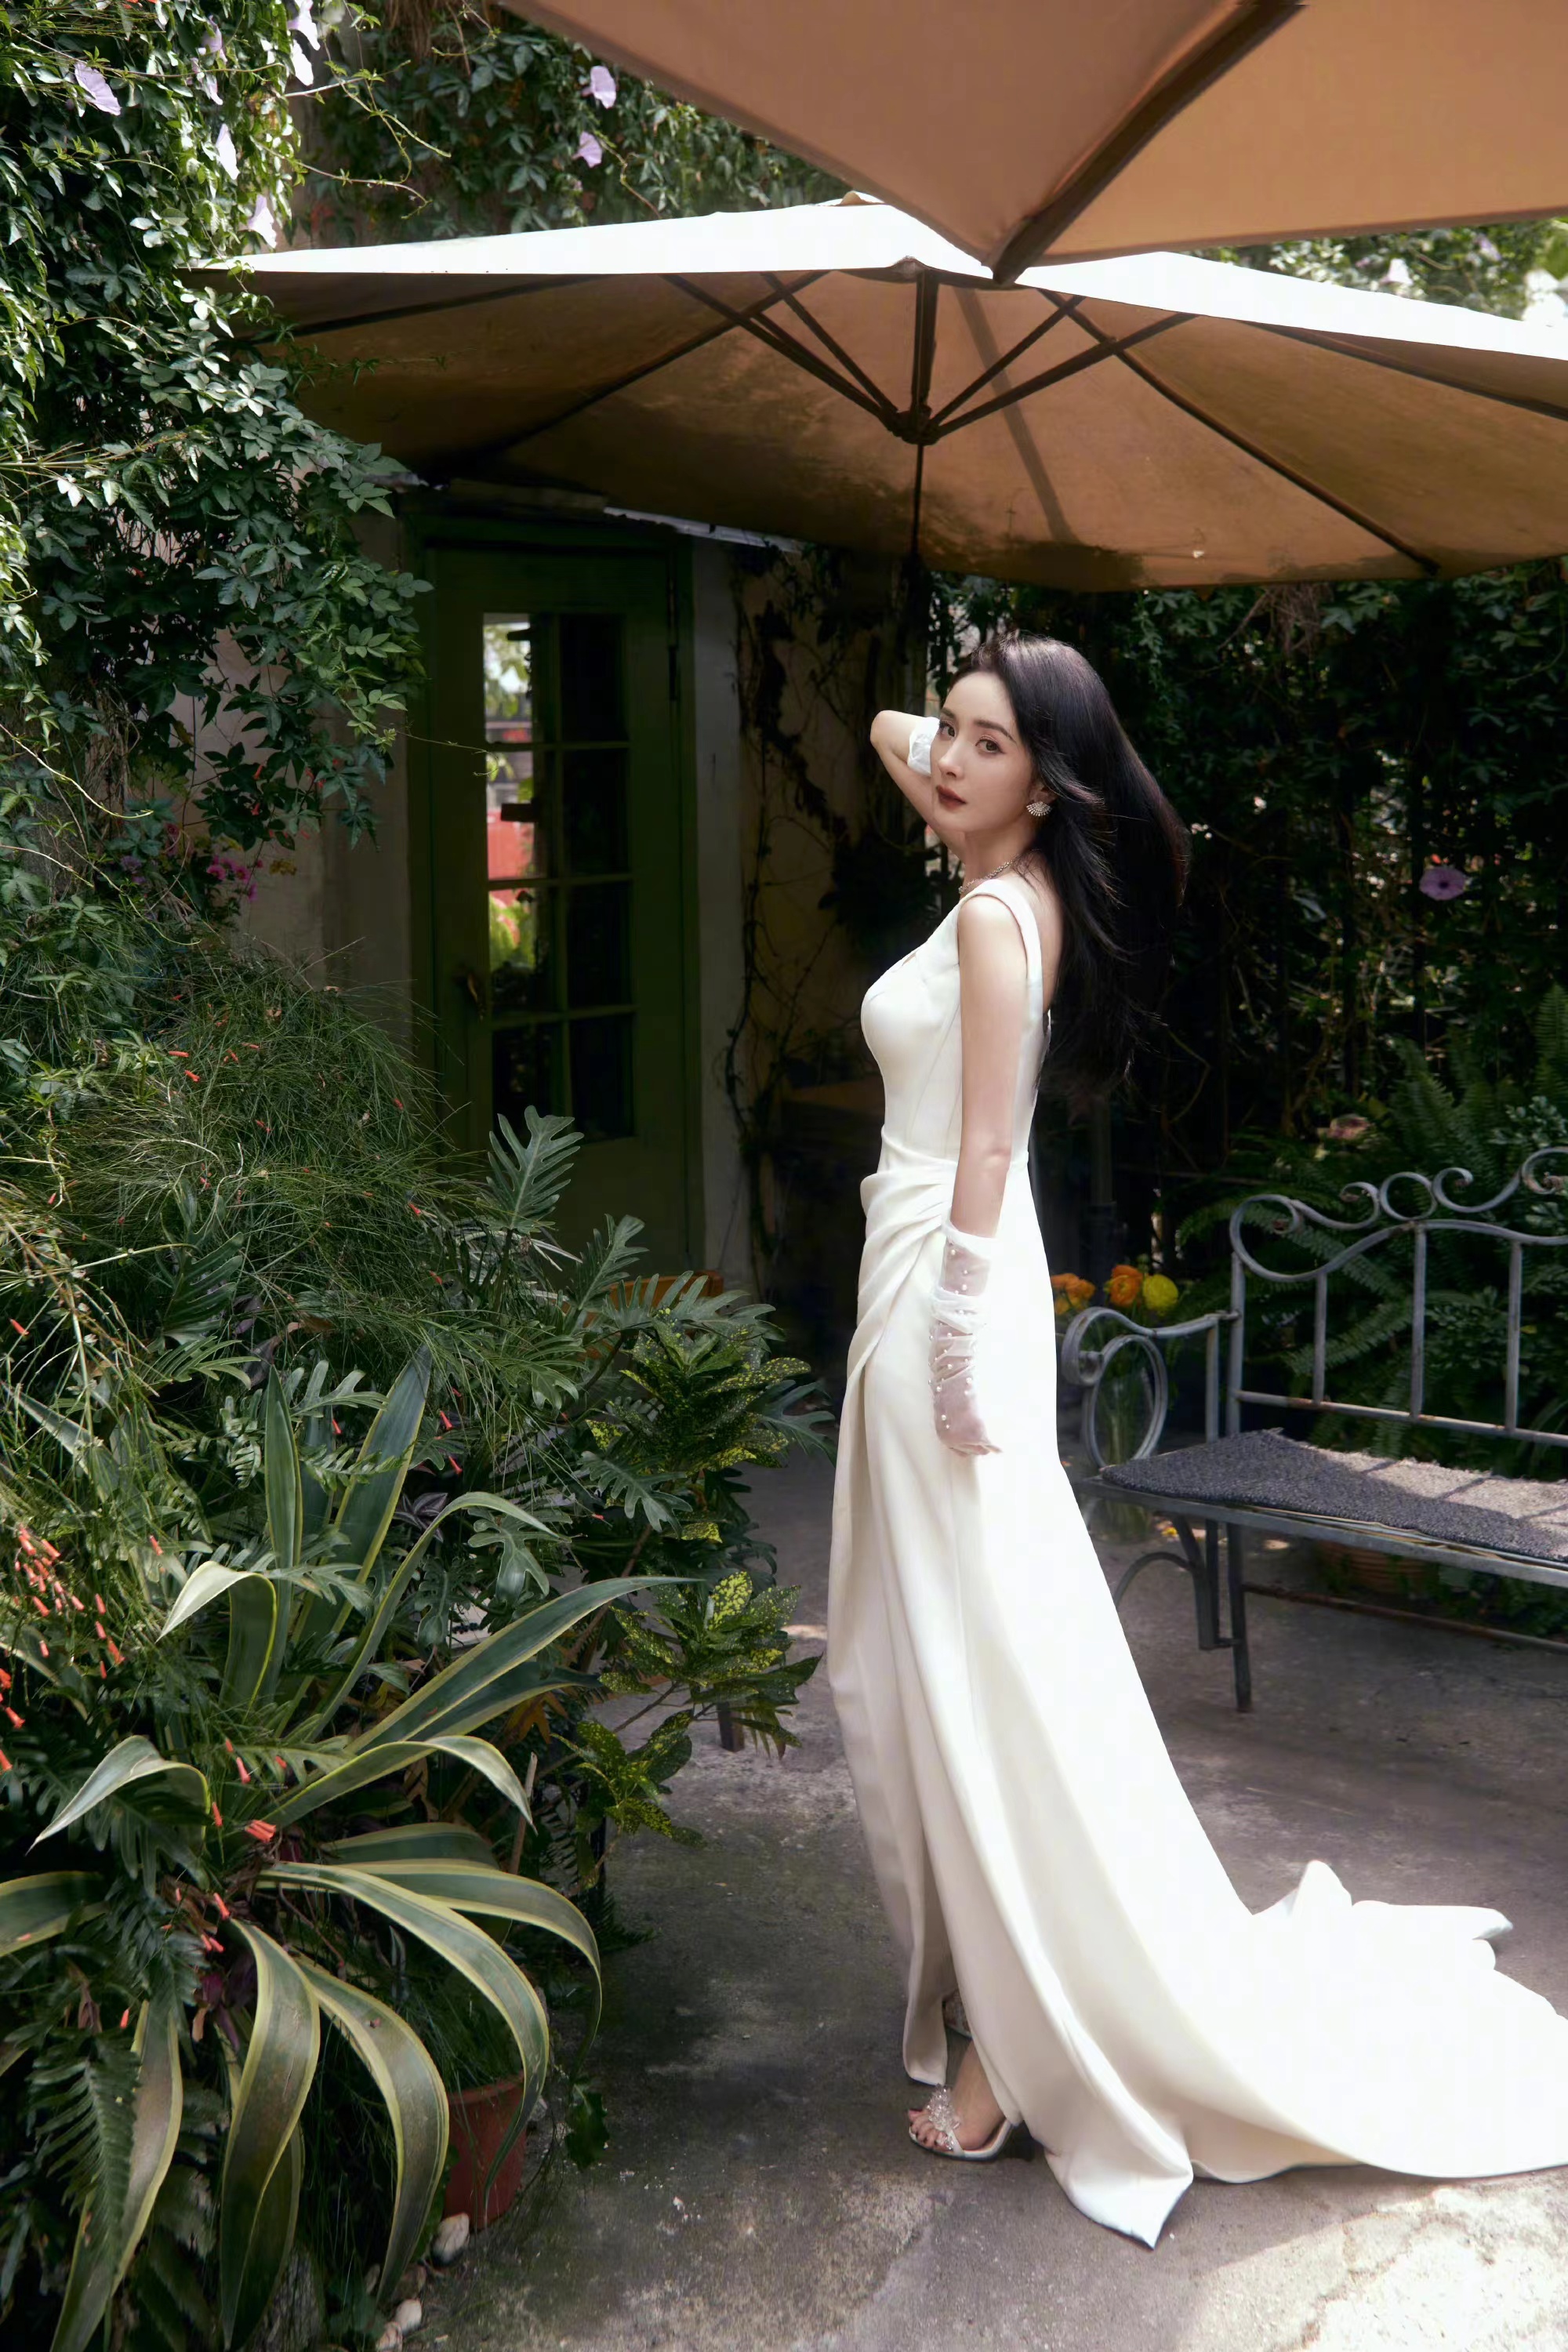 杨幂出席活动,穿一条白色长裙搭配薄纱手套,温婉优雅又迷人! 